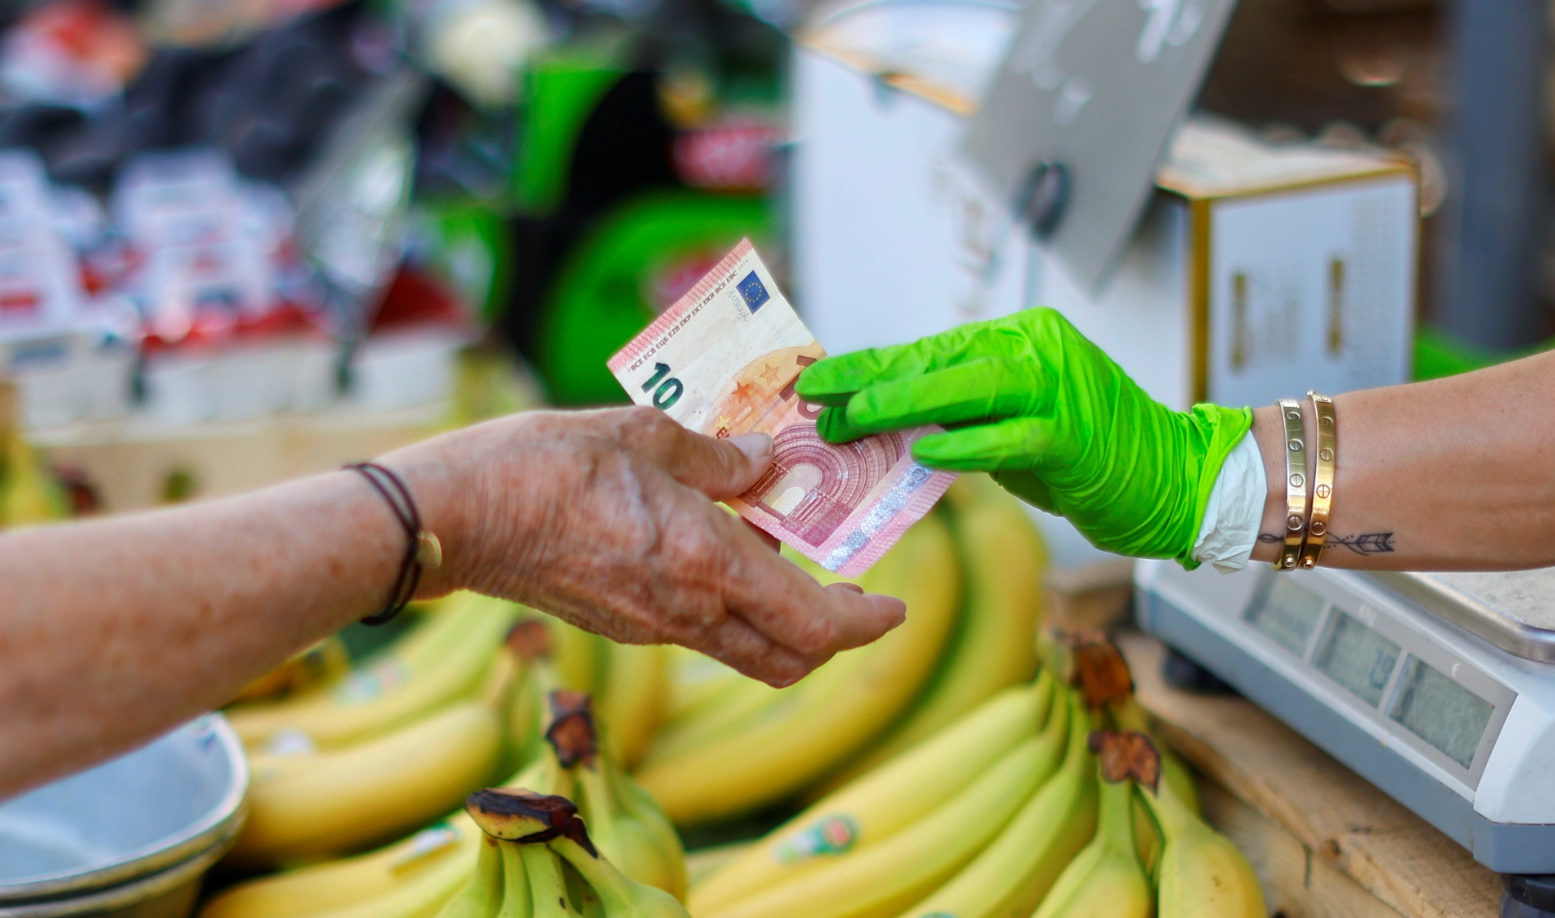 Godišnja stopa inflacije u eurozoni prodaja banana na stolu žena daje 10 eura prodavačici koja nosi drečavo zelene rukavice iza se vide ljudi na pijaci dan na stolu banane